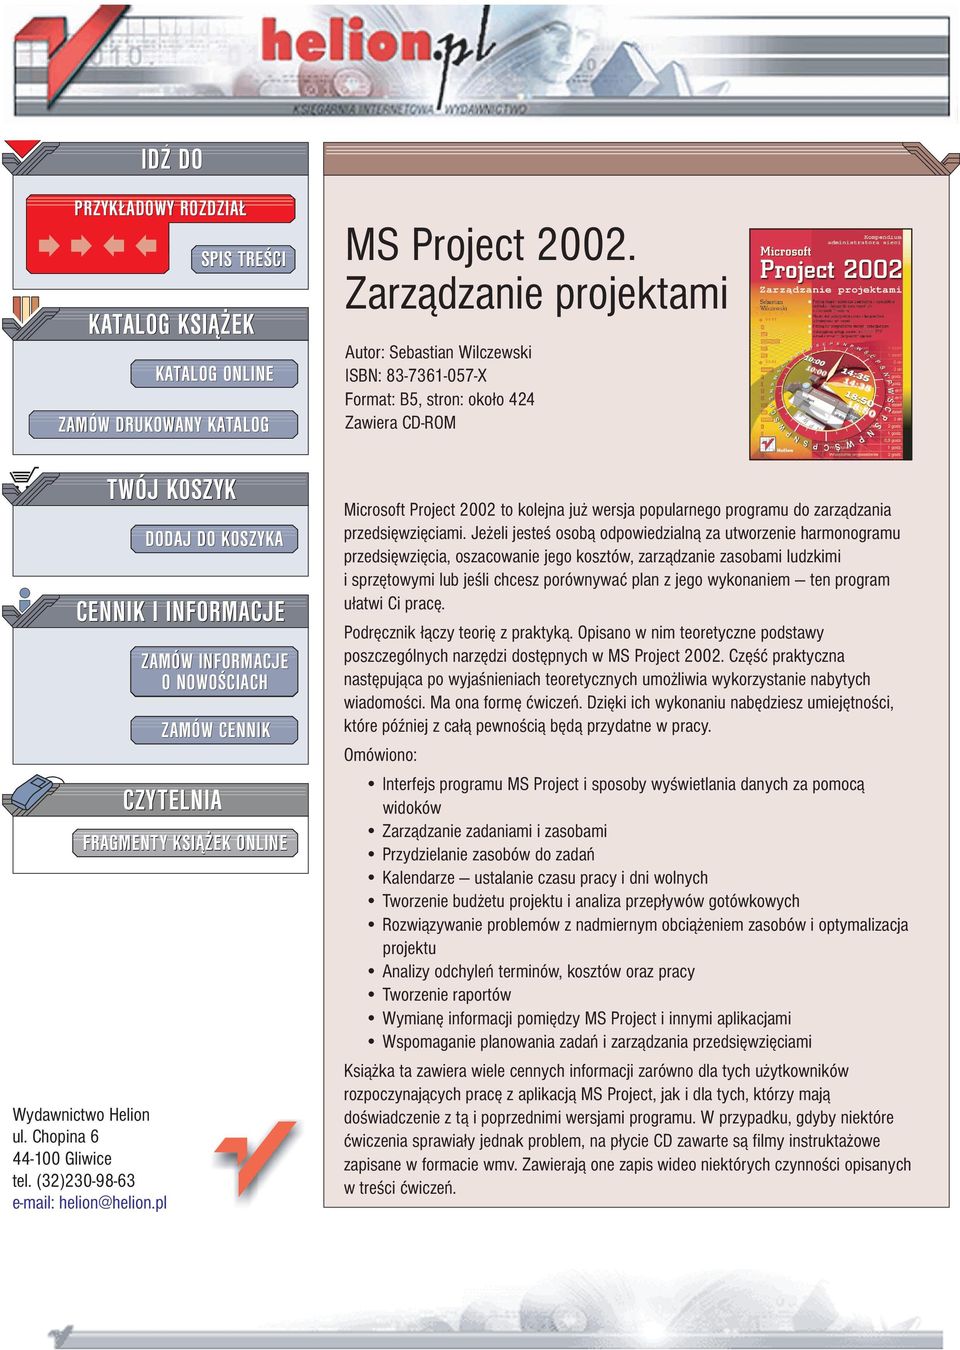 Zarz¹dzanie projektami Autor: Sebastian Wilczewski ISBN: 83-7361-057-X Format: B5, stron: oko³o 424 Zawiera CD-ROM Microsoft Project 2002 to kolejna ju wersja popularnego programu do zarz¹dzania